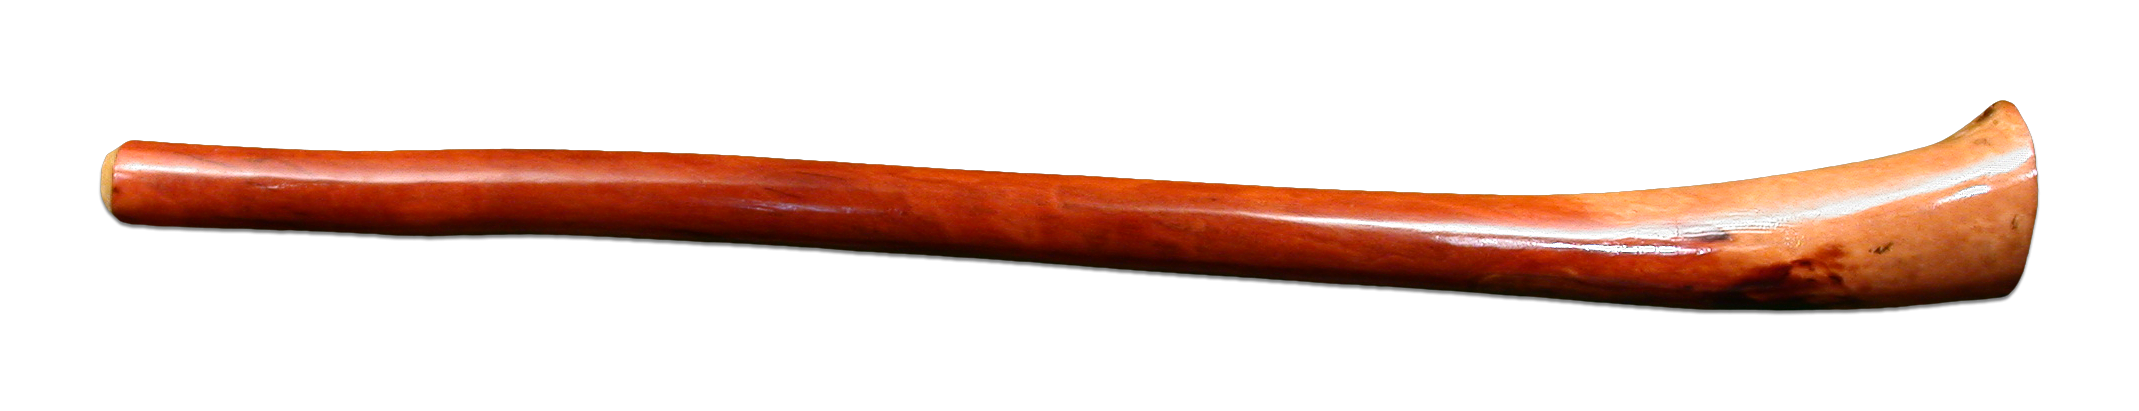 Didgeridoo PNG - 154494